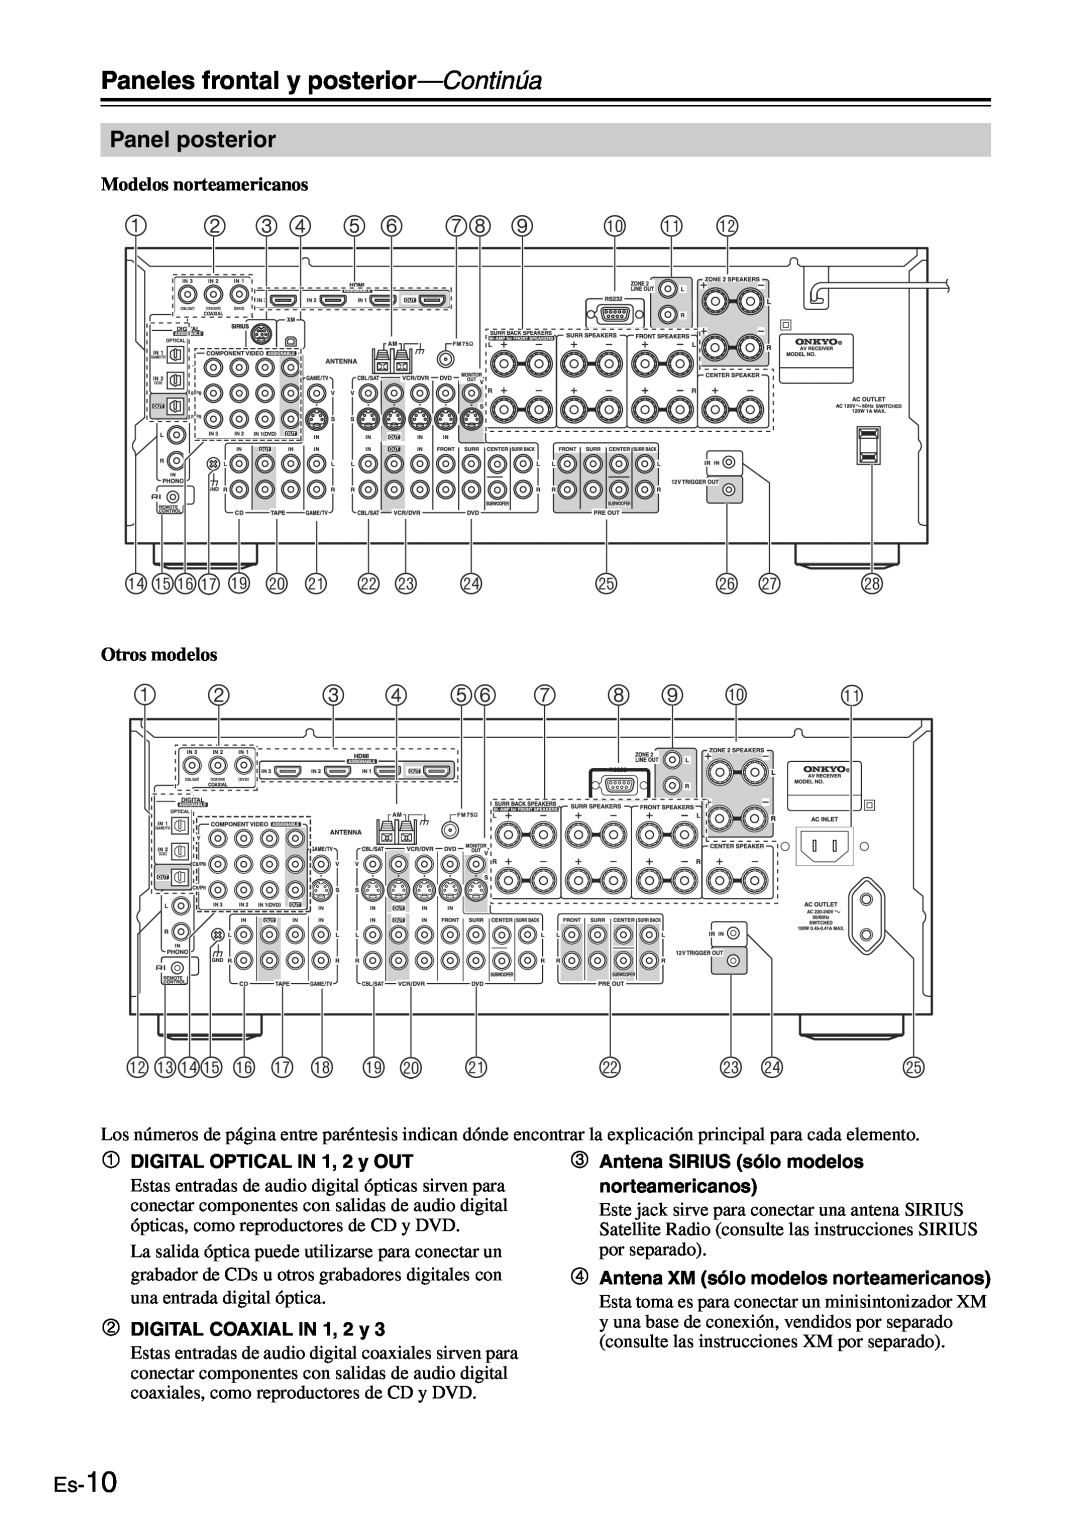 Onkyo TX-SR705 manual 2 3 4 5, bobpbqbrbt ck cl cm cn co 